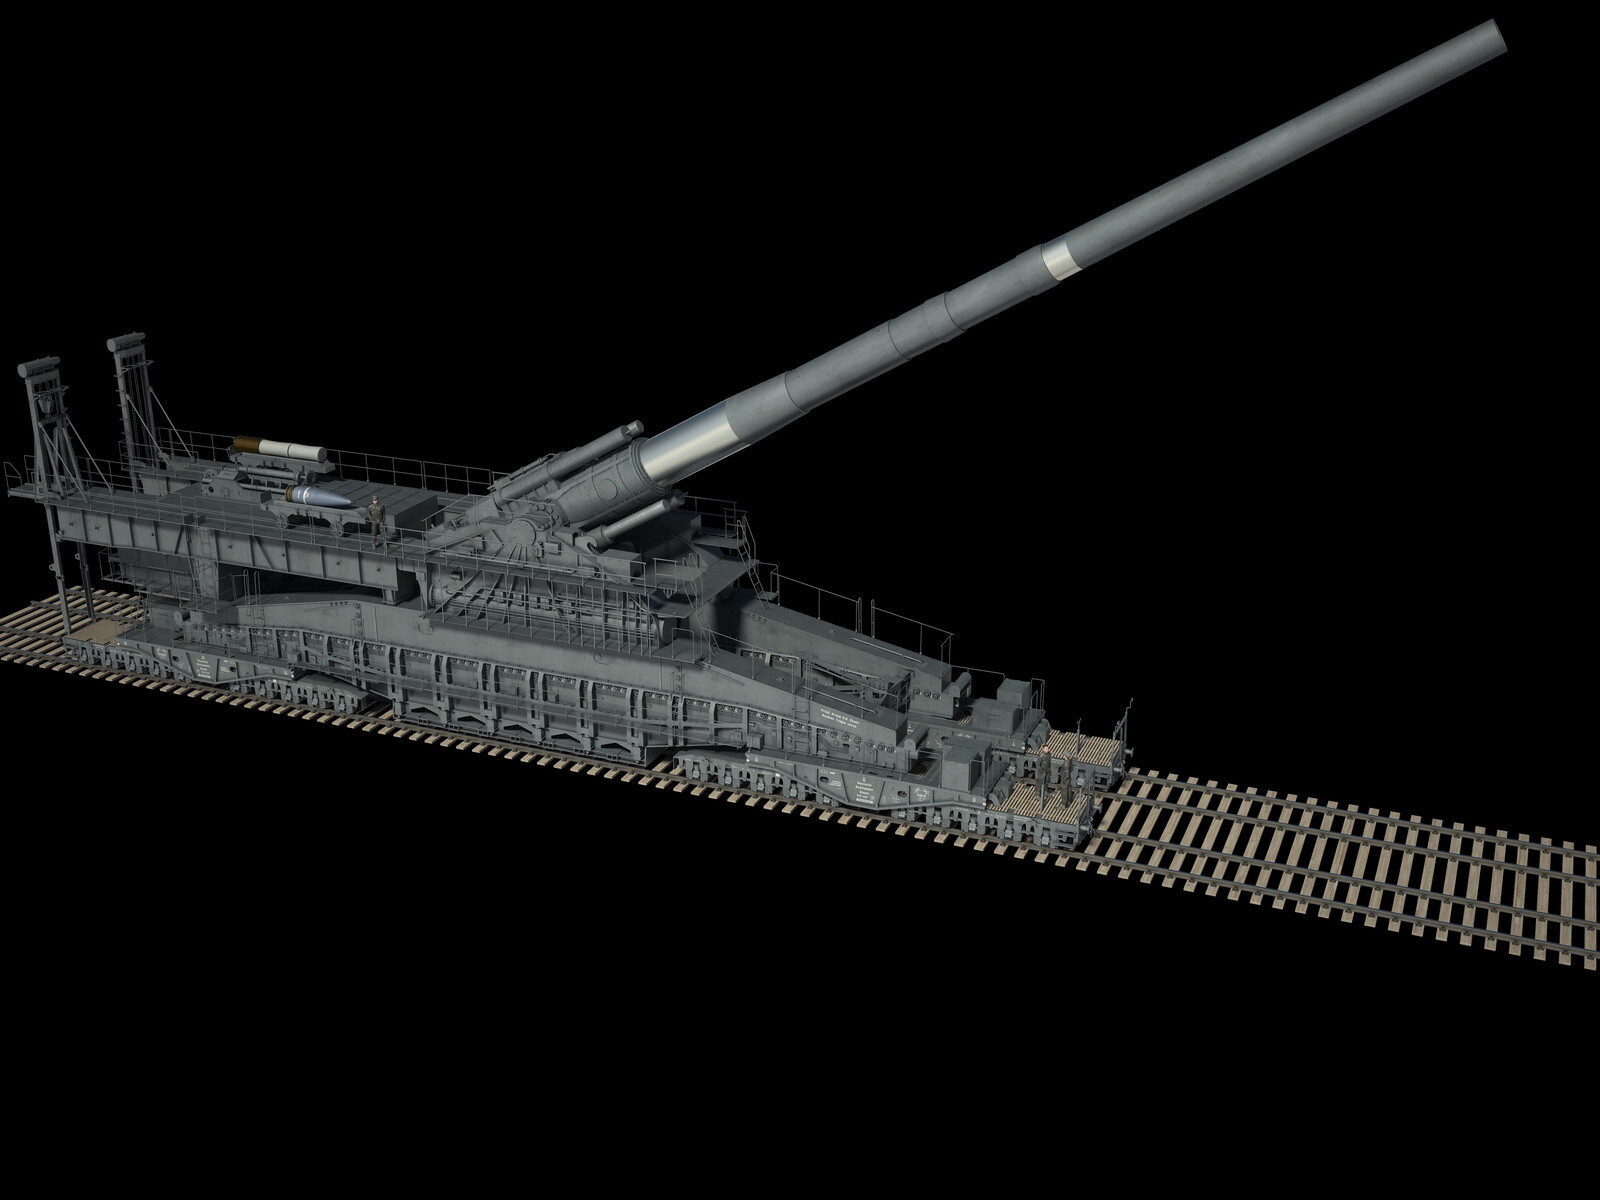 1/700 Scale Schwerer Gustav 80cm Railroad Gun (L98SMFP3Y) by wachapman